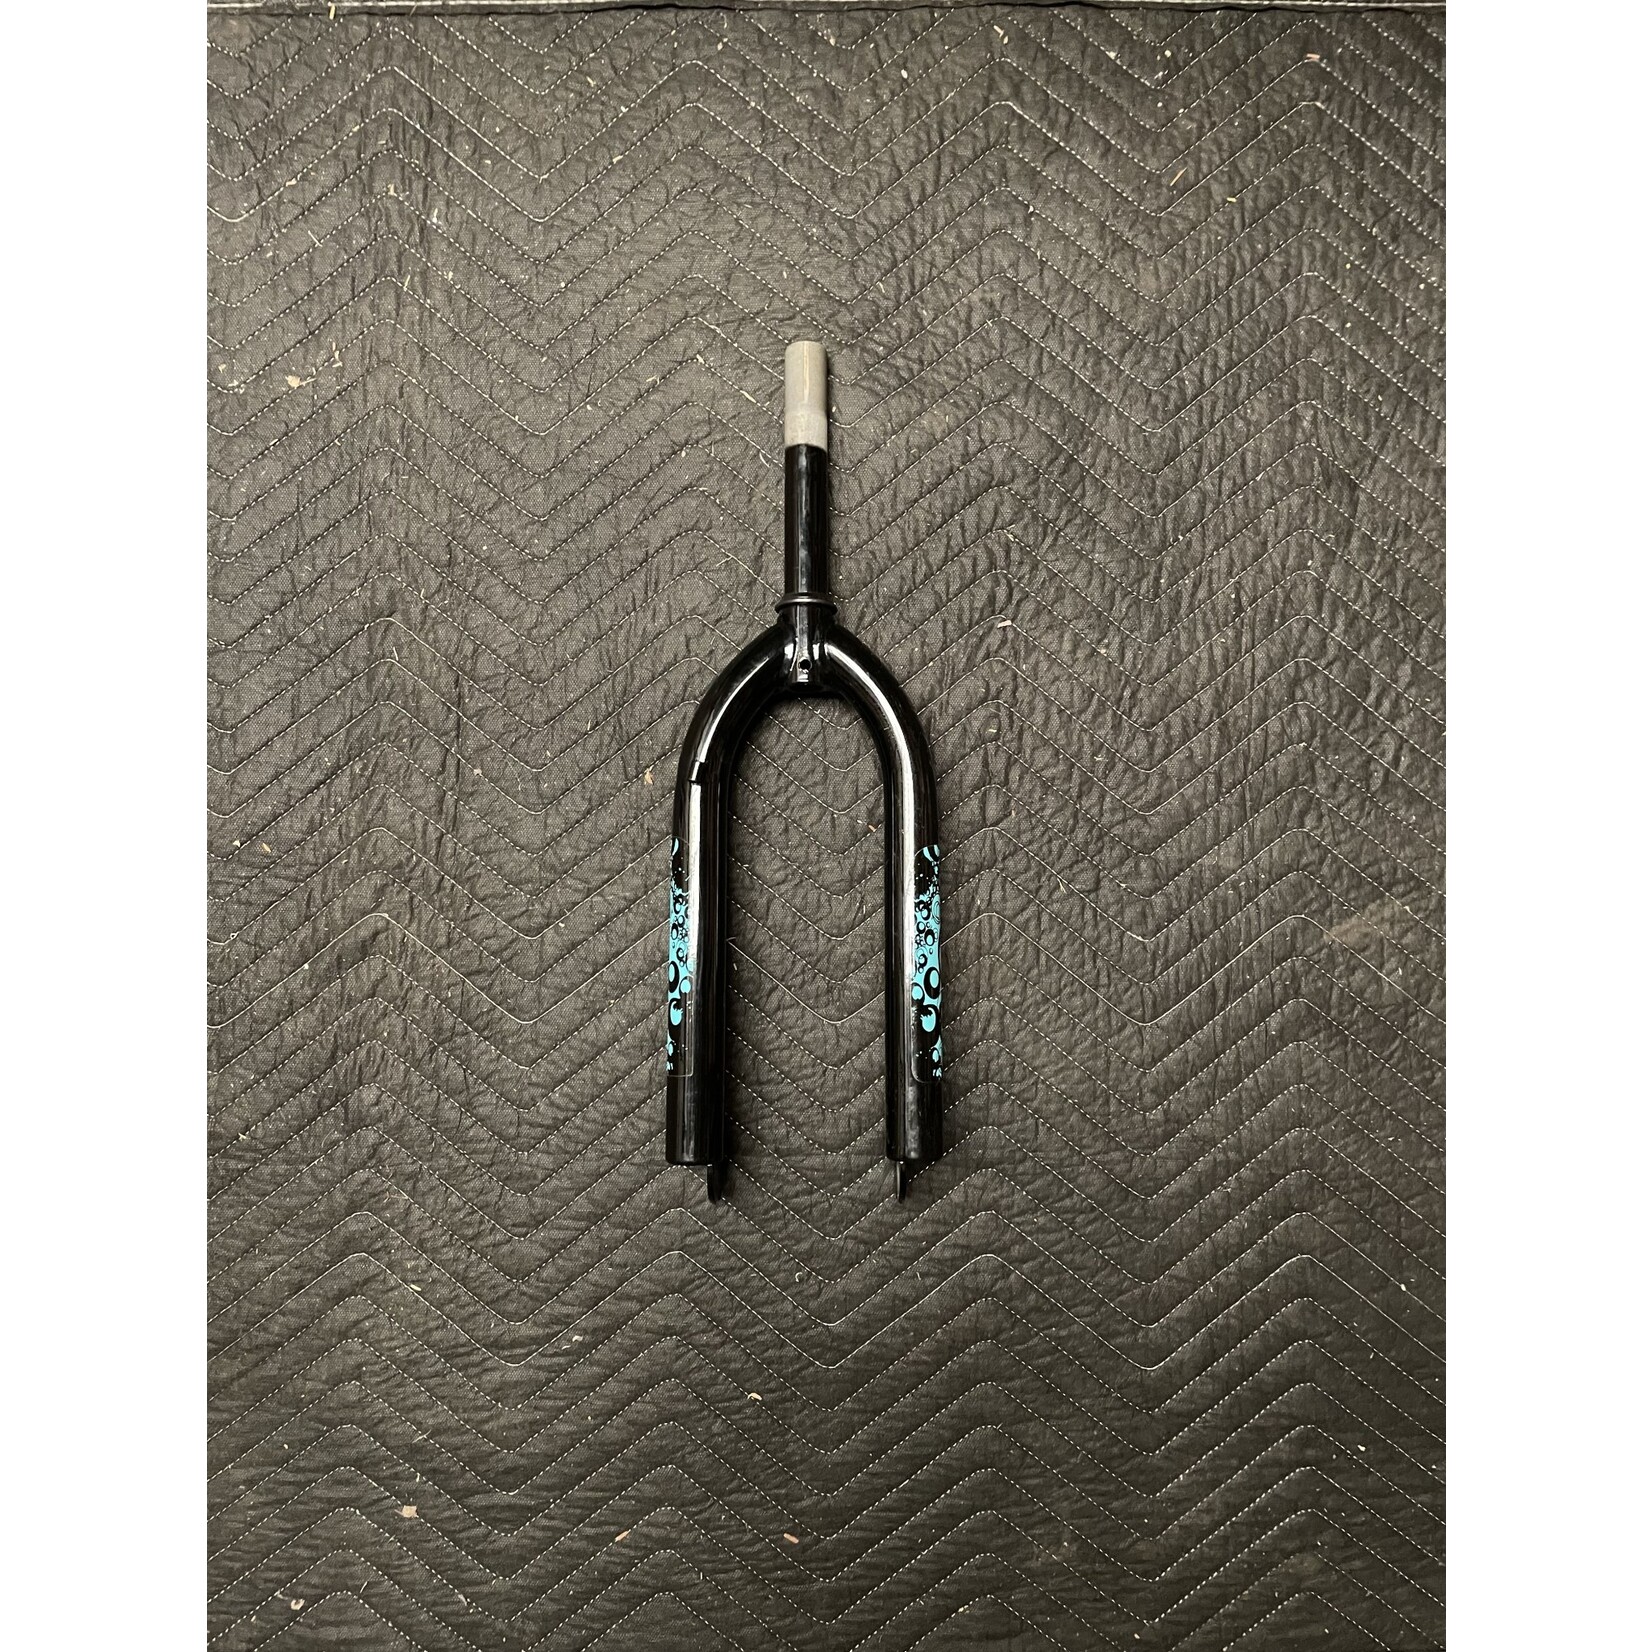 1” x 6” Threaded 20" Bicycle Fork / Rigid (Black w/ Blue Swirl Designs)